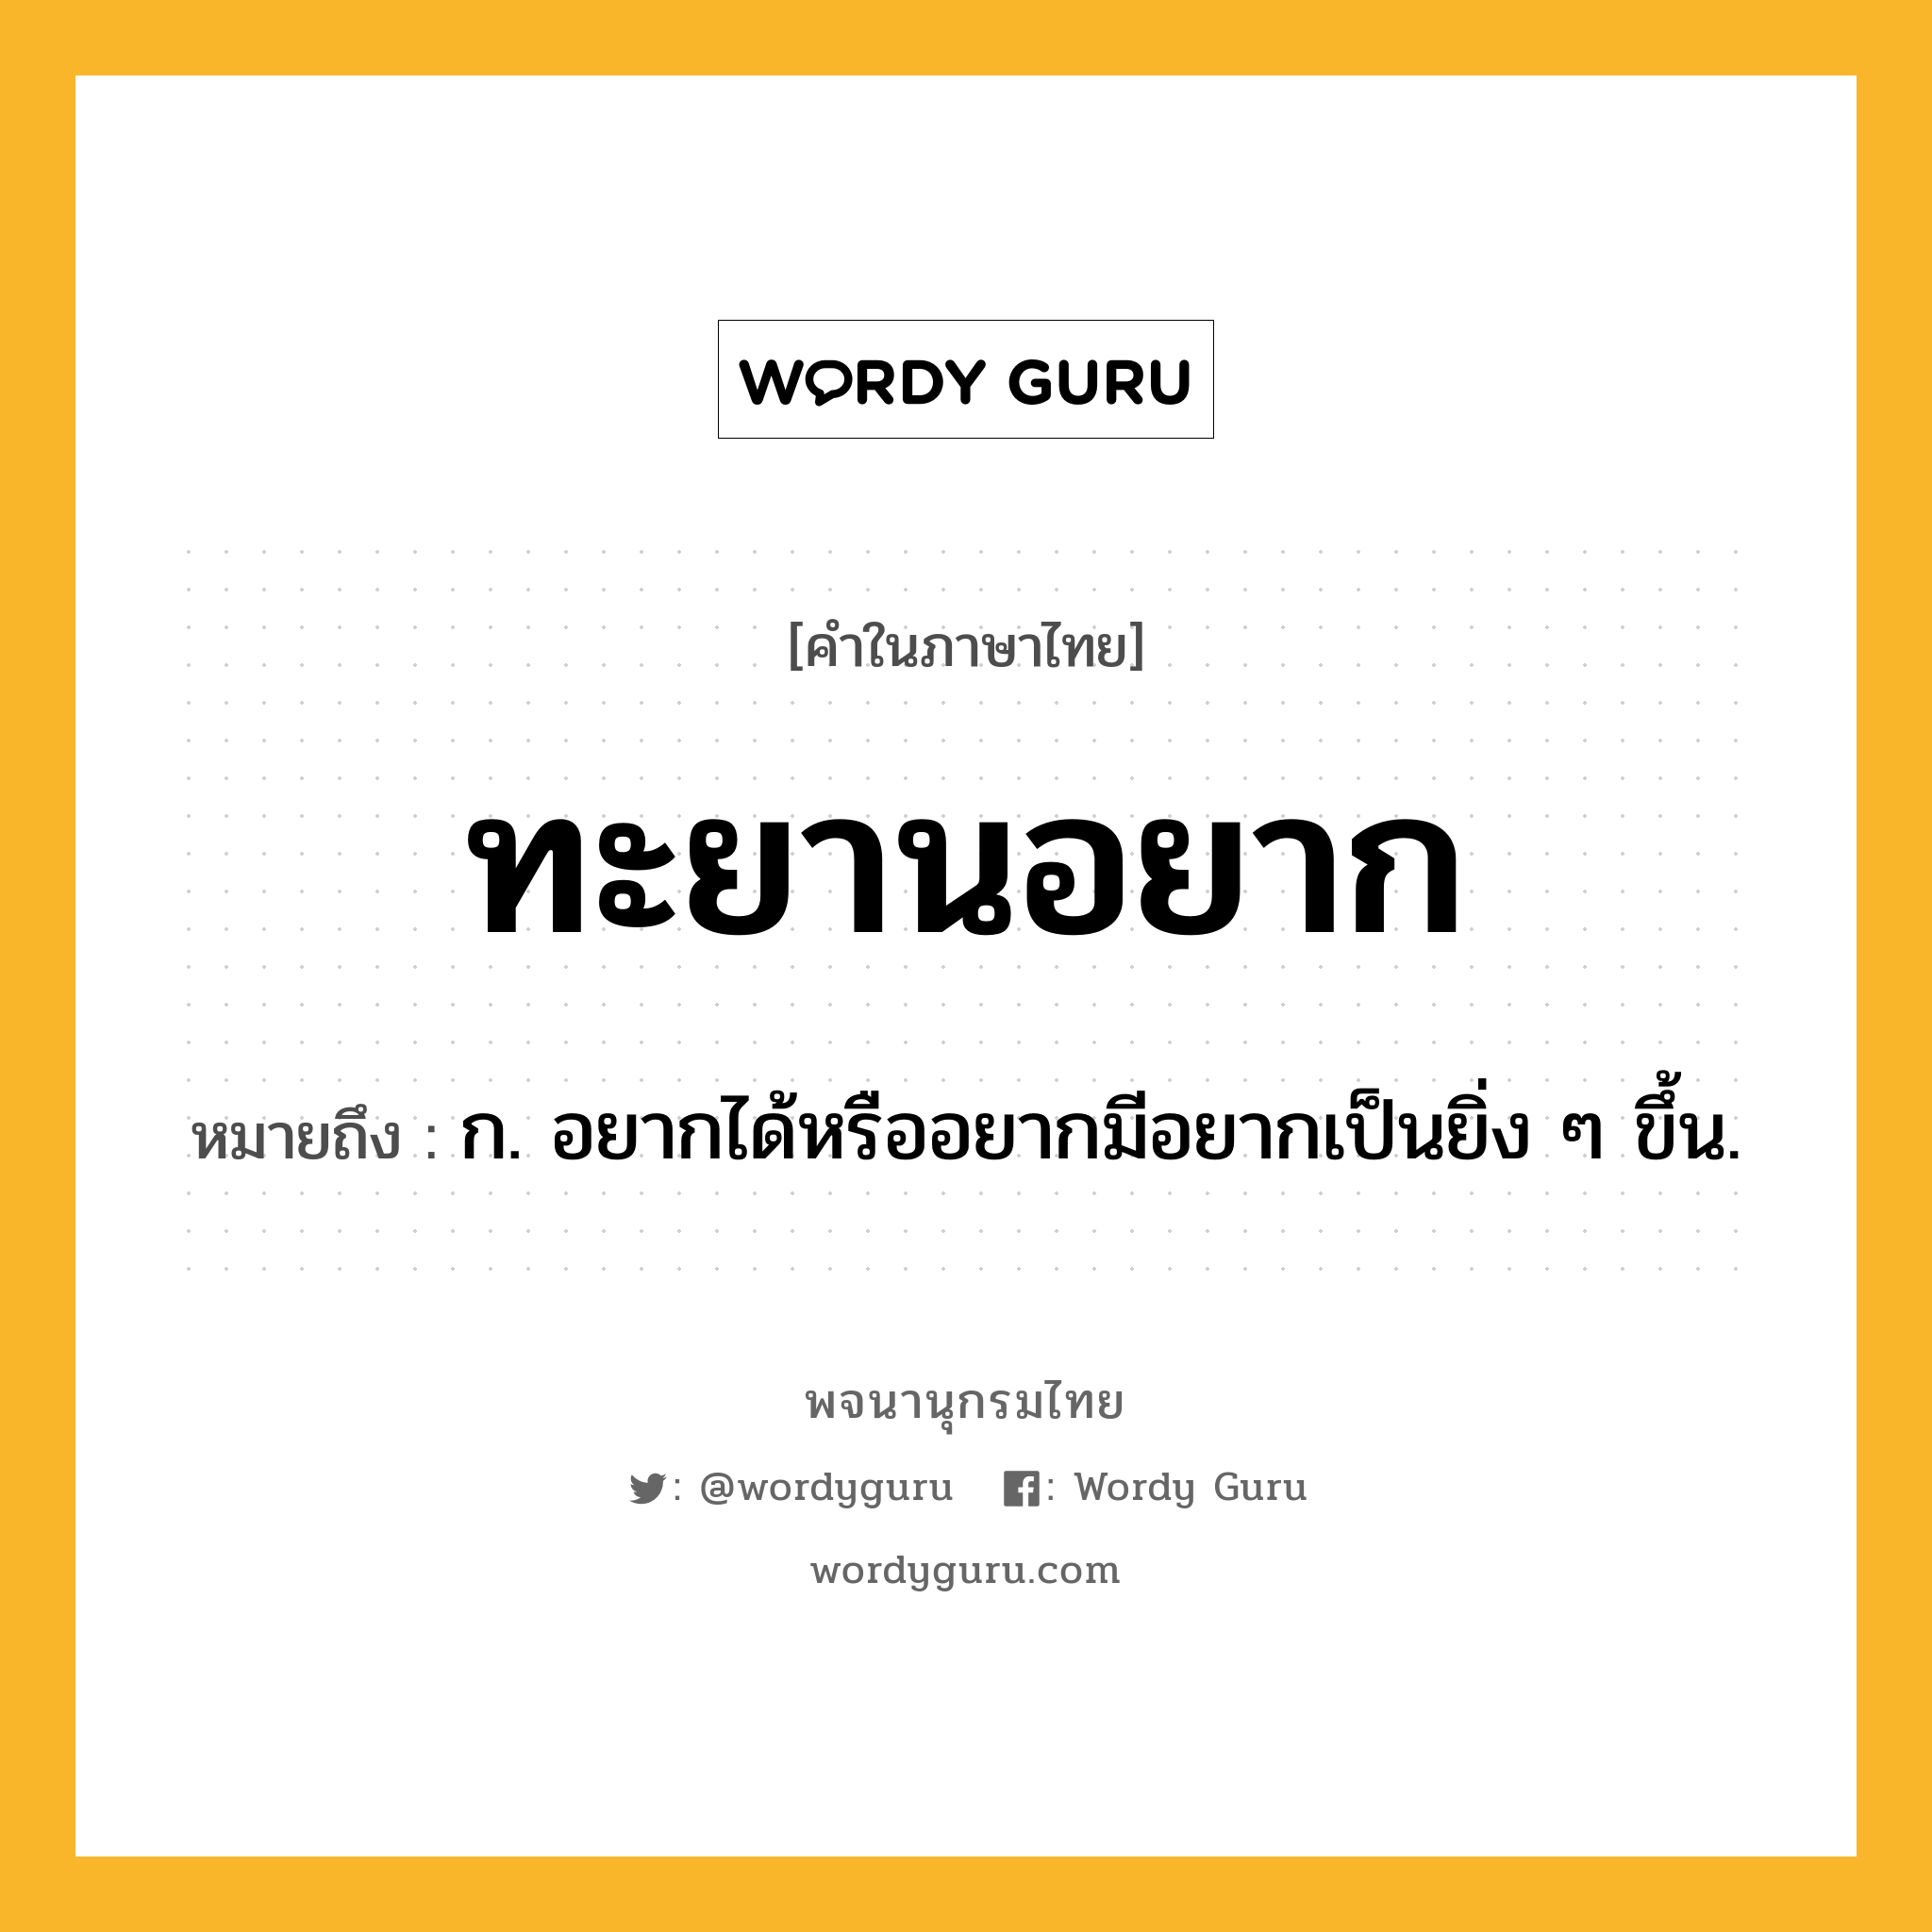 ทะยานอยาก ความหมาย หมายถึงอะไร?, คำในภาษาไทย ทะยานอยาก หมายถึง ก. อยากได้หรืออยากมีอยากเป็นยิ่ง ๆ ขึ้น.